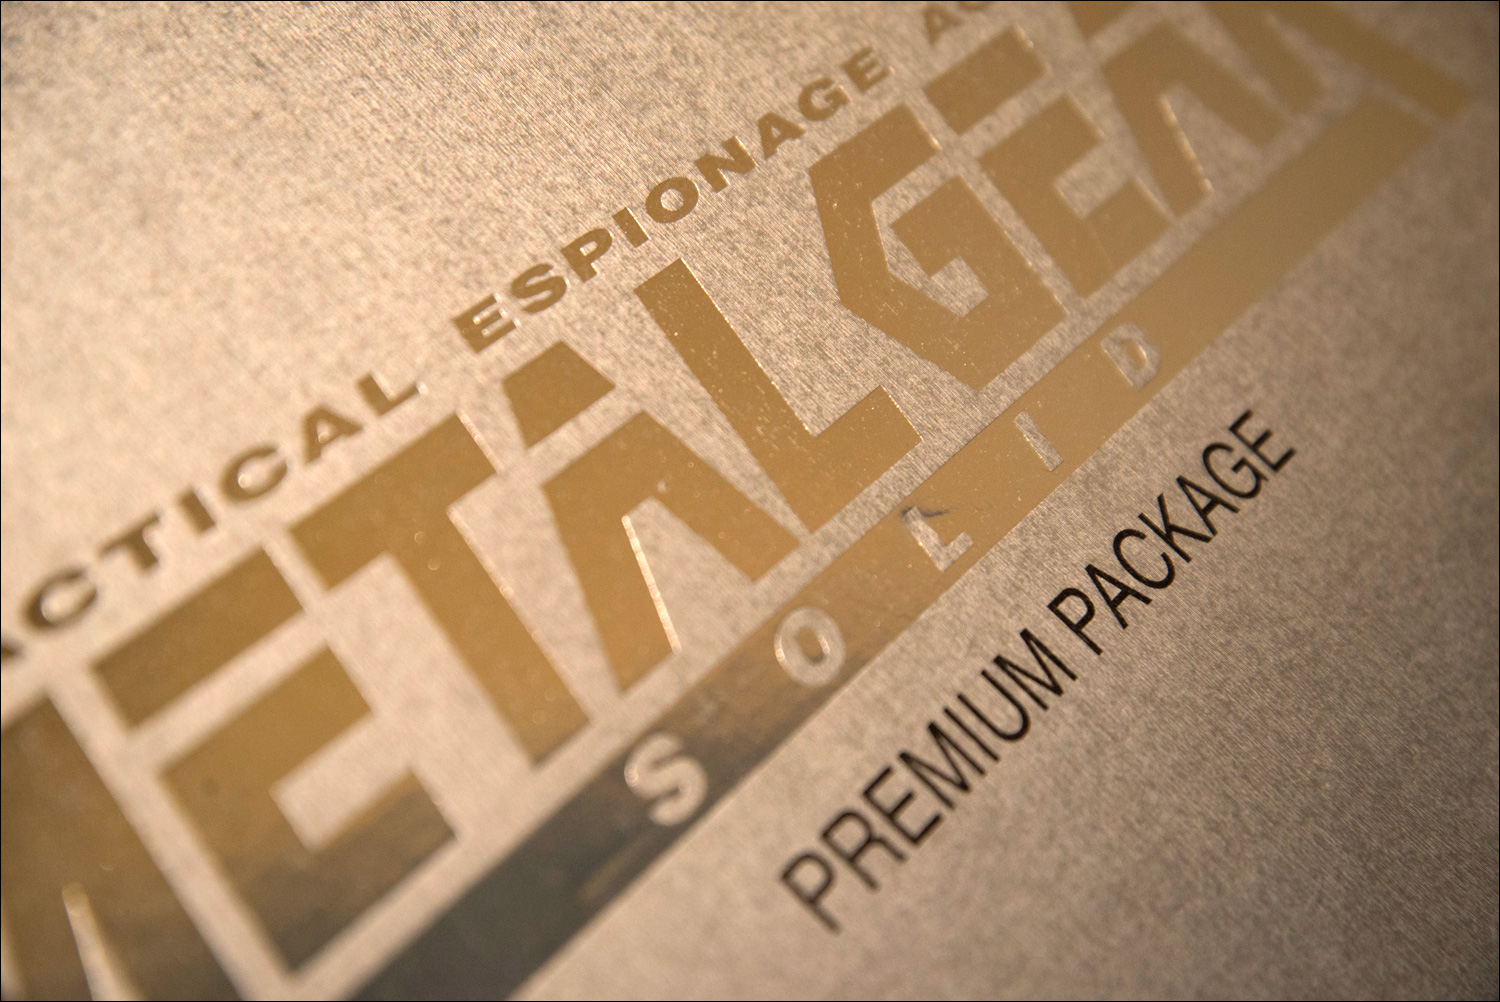 Metal-Gear-Solid-Premium-Package-Logo